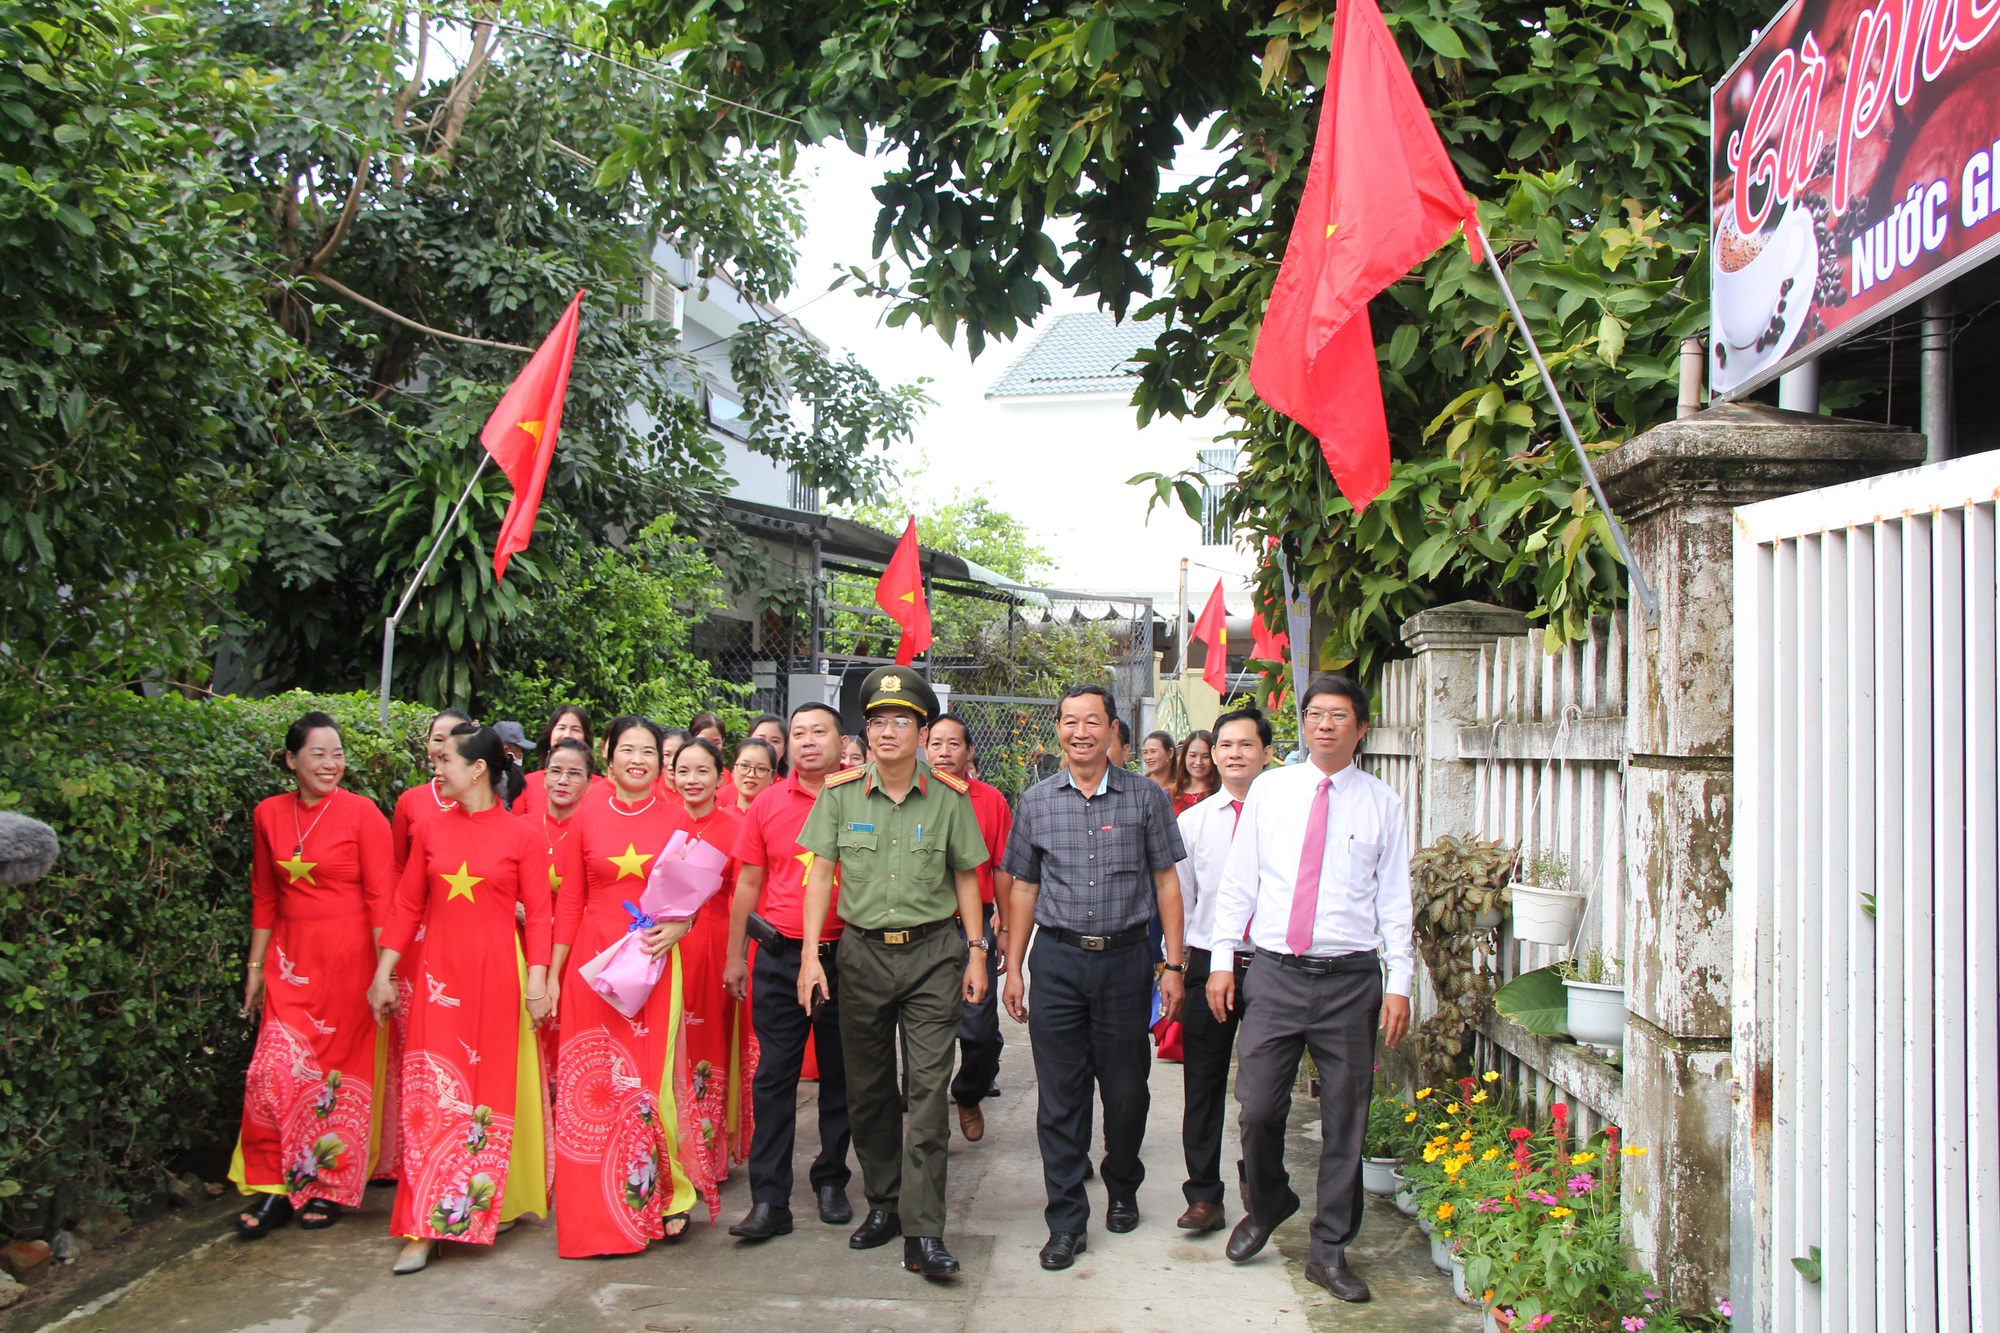 CLIP: Người dân sải bước trên Đường cờ Tổ quốc đầu tiên ở Đà Nẵng